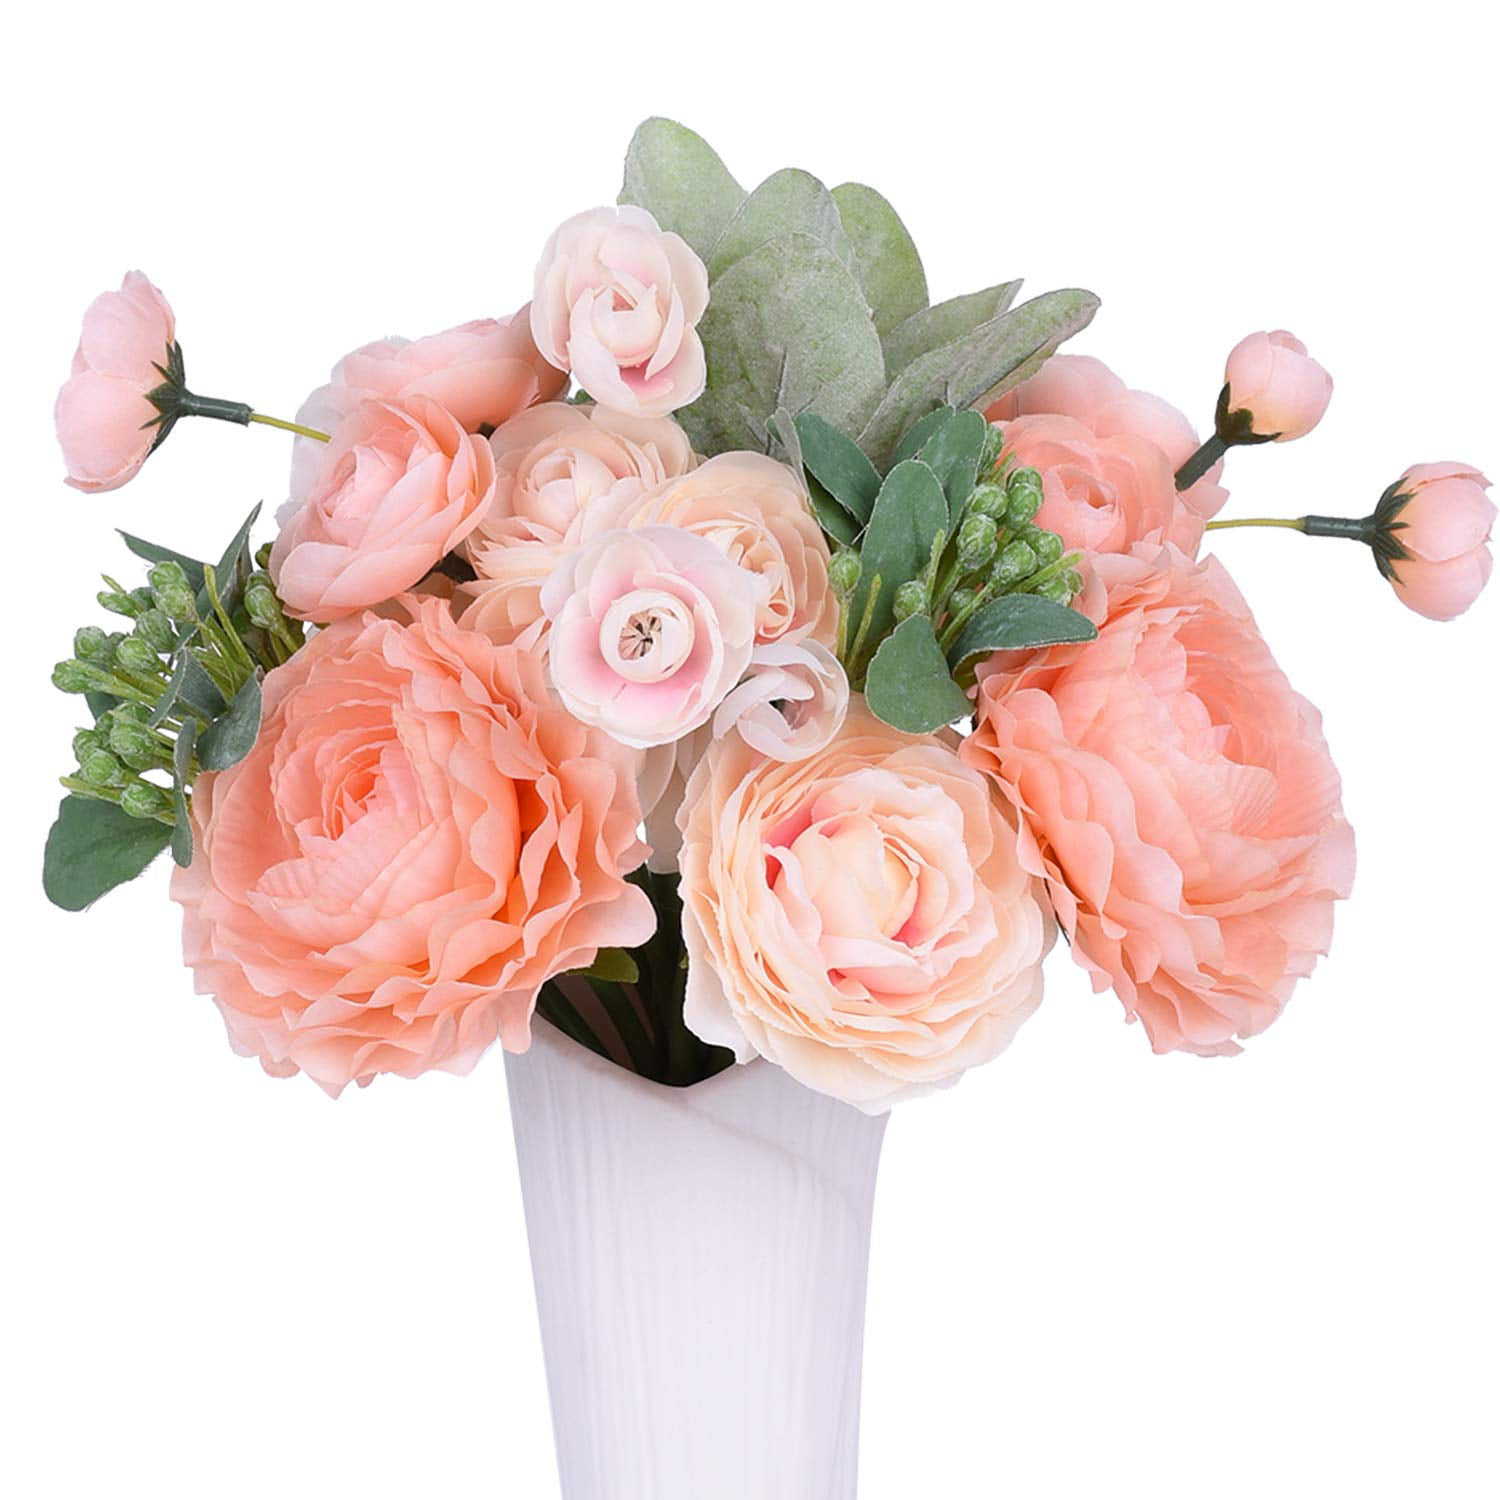 Six 6' Artificial Bridal Lily/Roe/Hydrangea Garland Cream Wedding Silk Flowers 